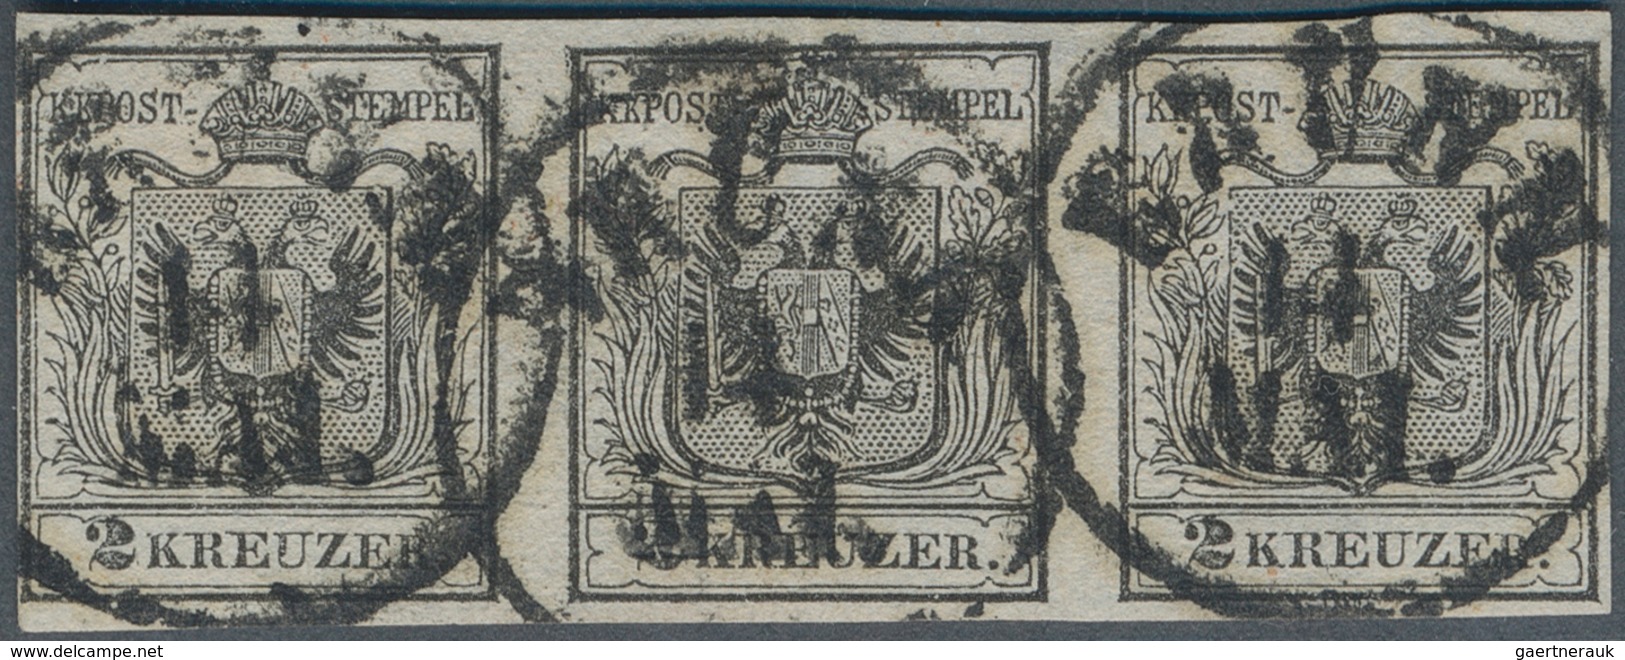 15292 Österreich: 1850, 2 Kr. Schwarz HP Type Ia (Erstdruck) Im Waagrechten Dreierstreifen Links Eng- Anso - Neufs